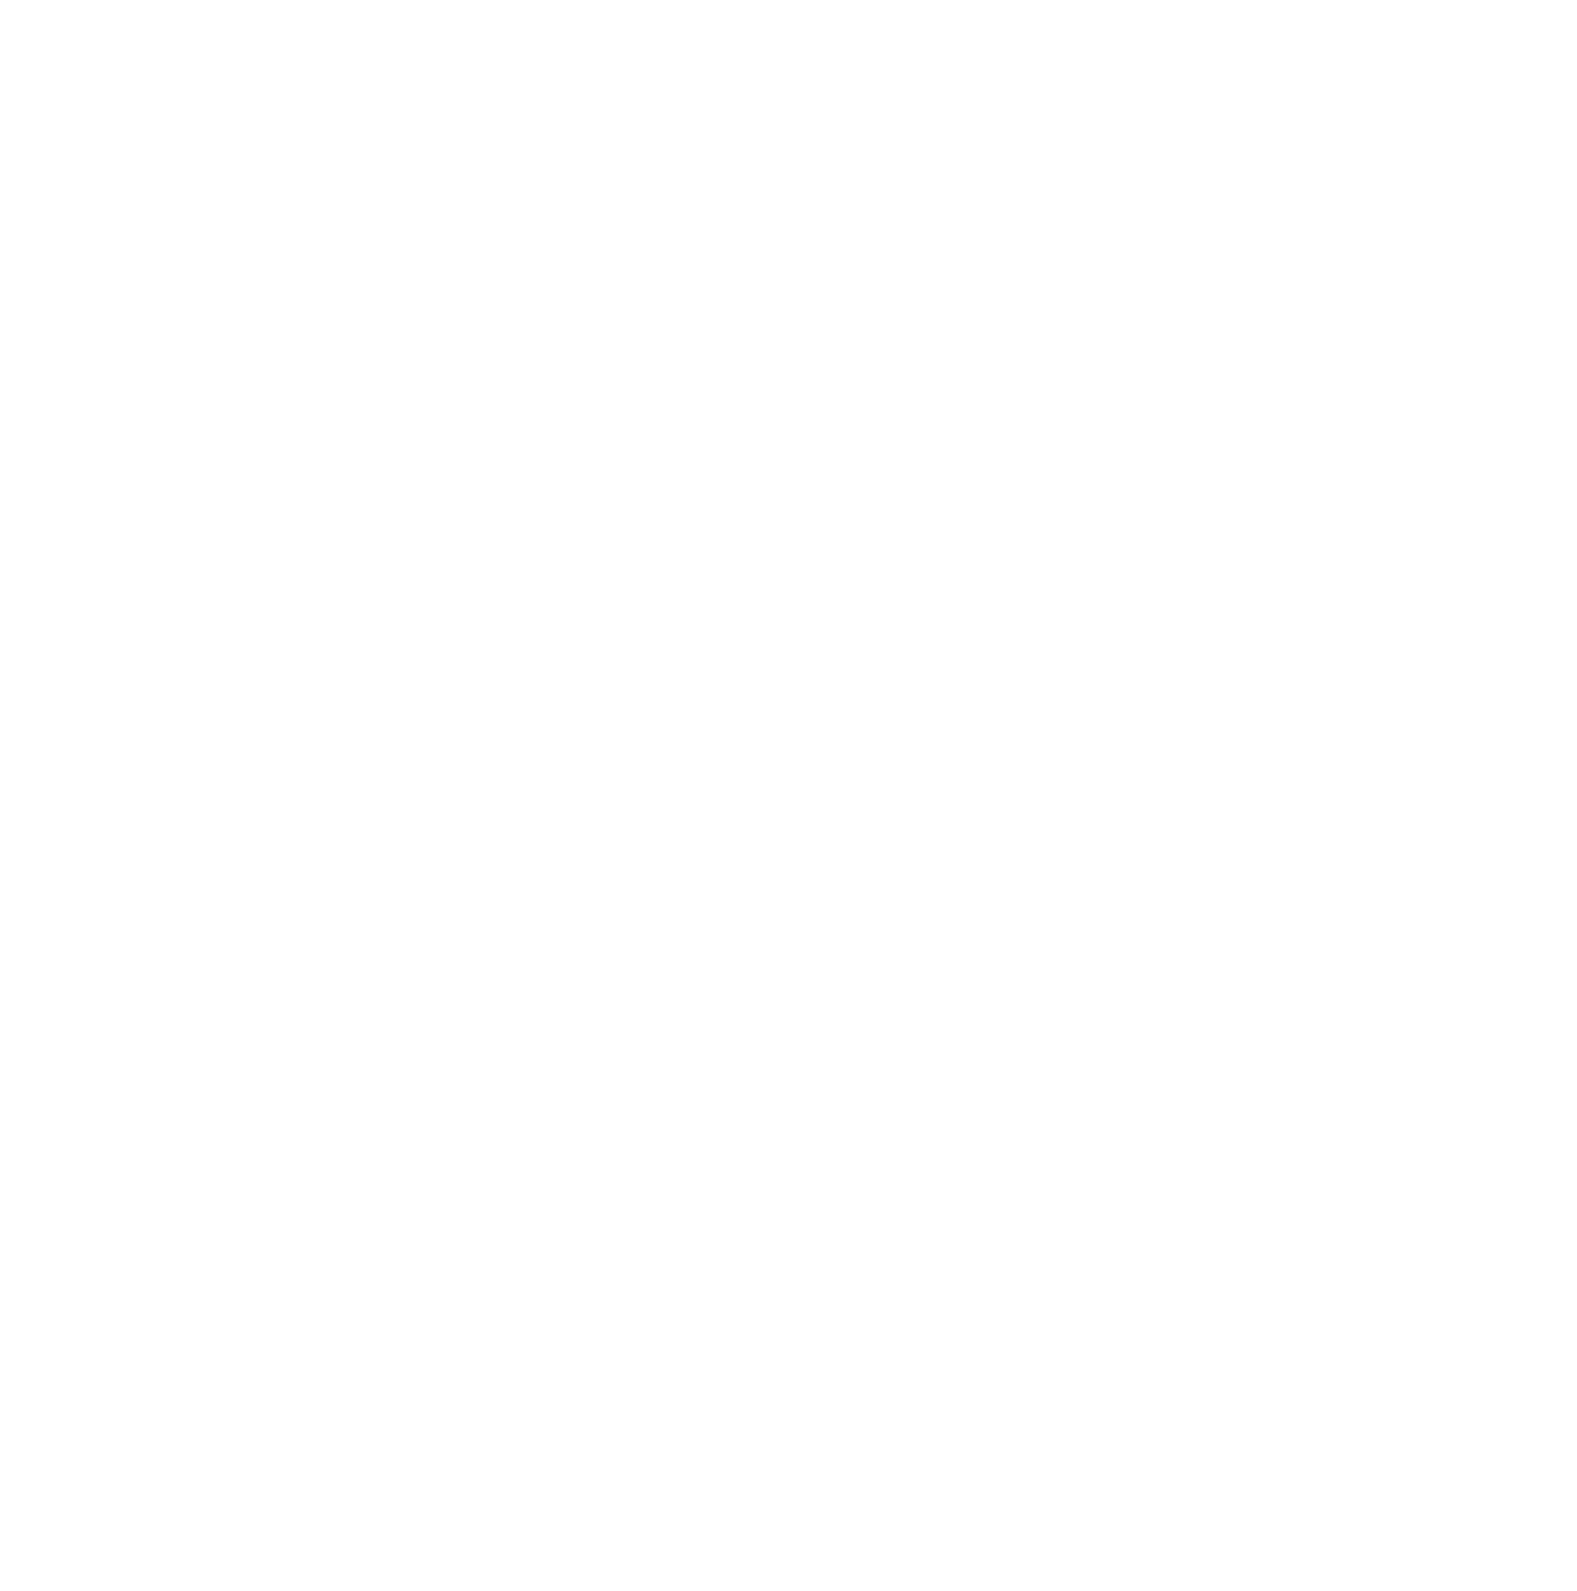 Burlington Stores logo for dark backgrounds (transparent PNG)